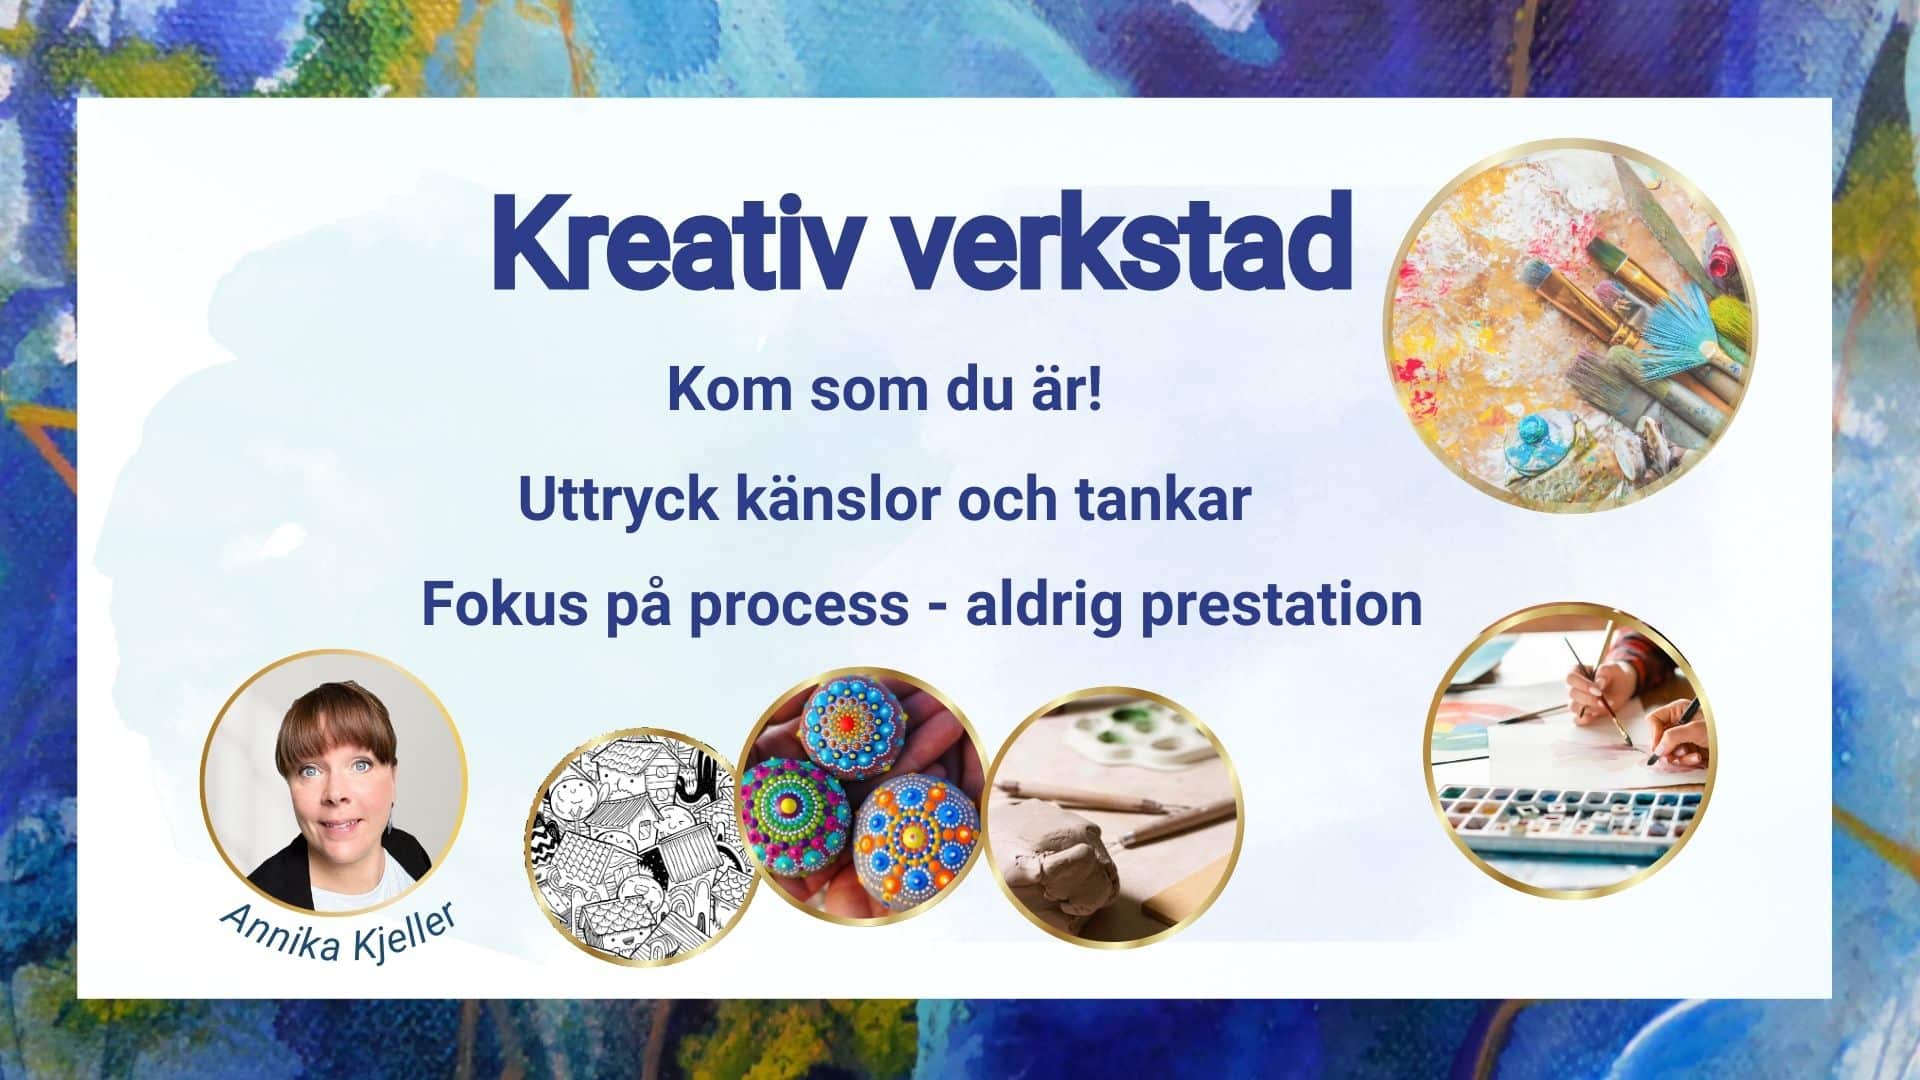 Bild med rubrik "Kreativ verkstad". Cirklar med guldram som innehåller olika kreativa övningar samt en bild på Annika, som håller i aktiviteten.